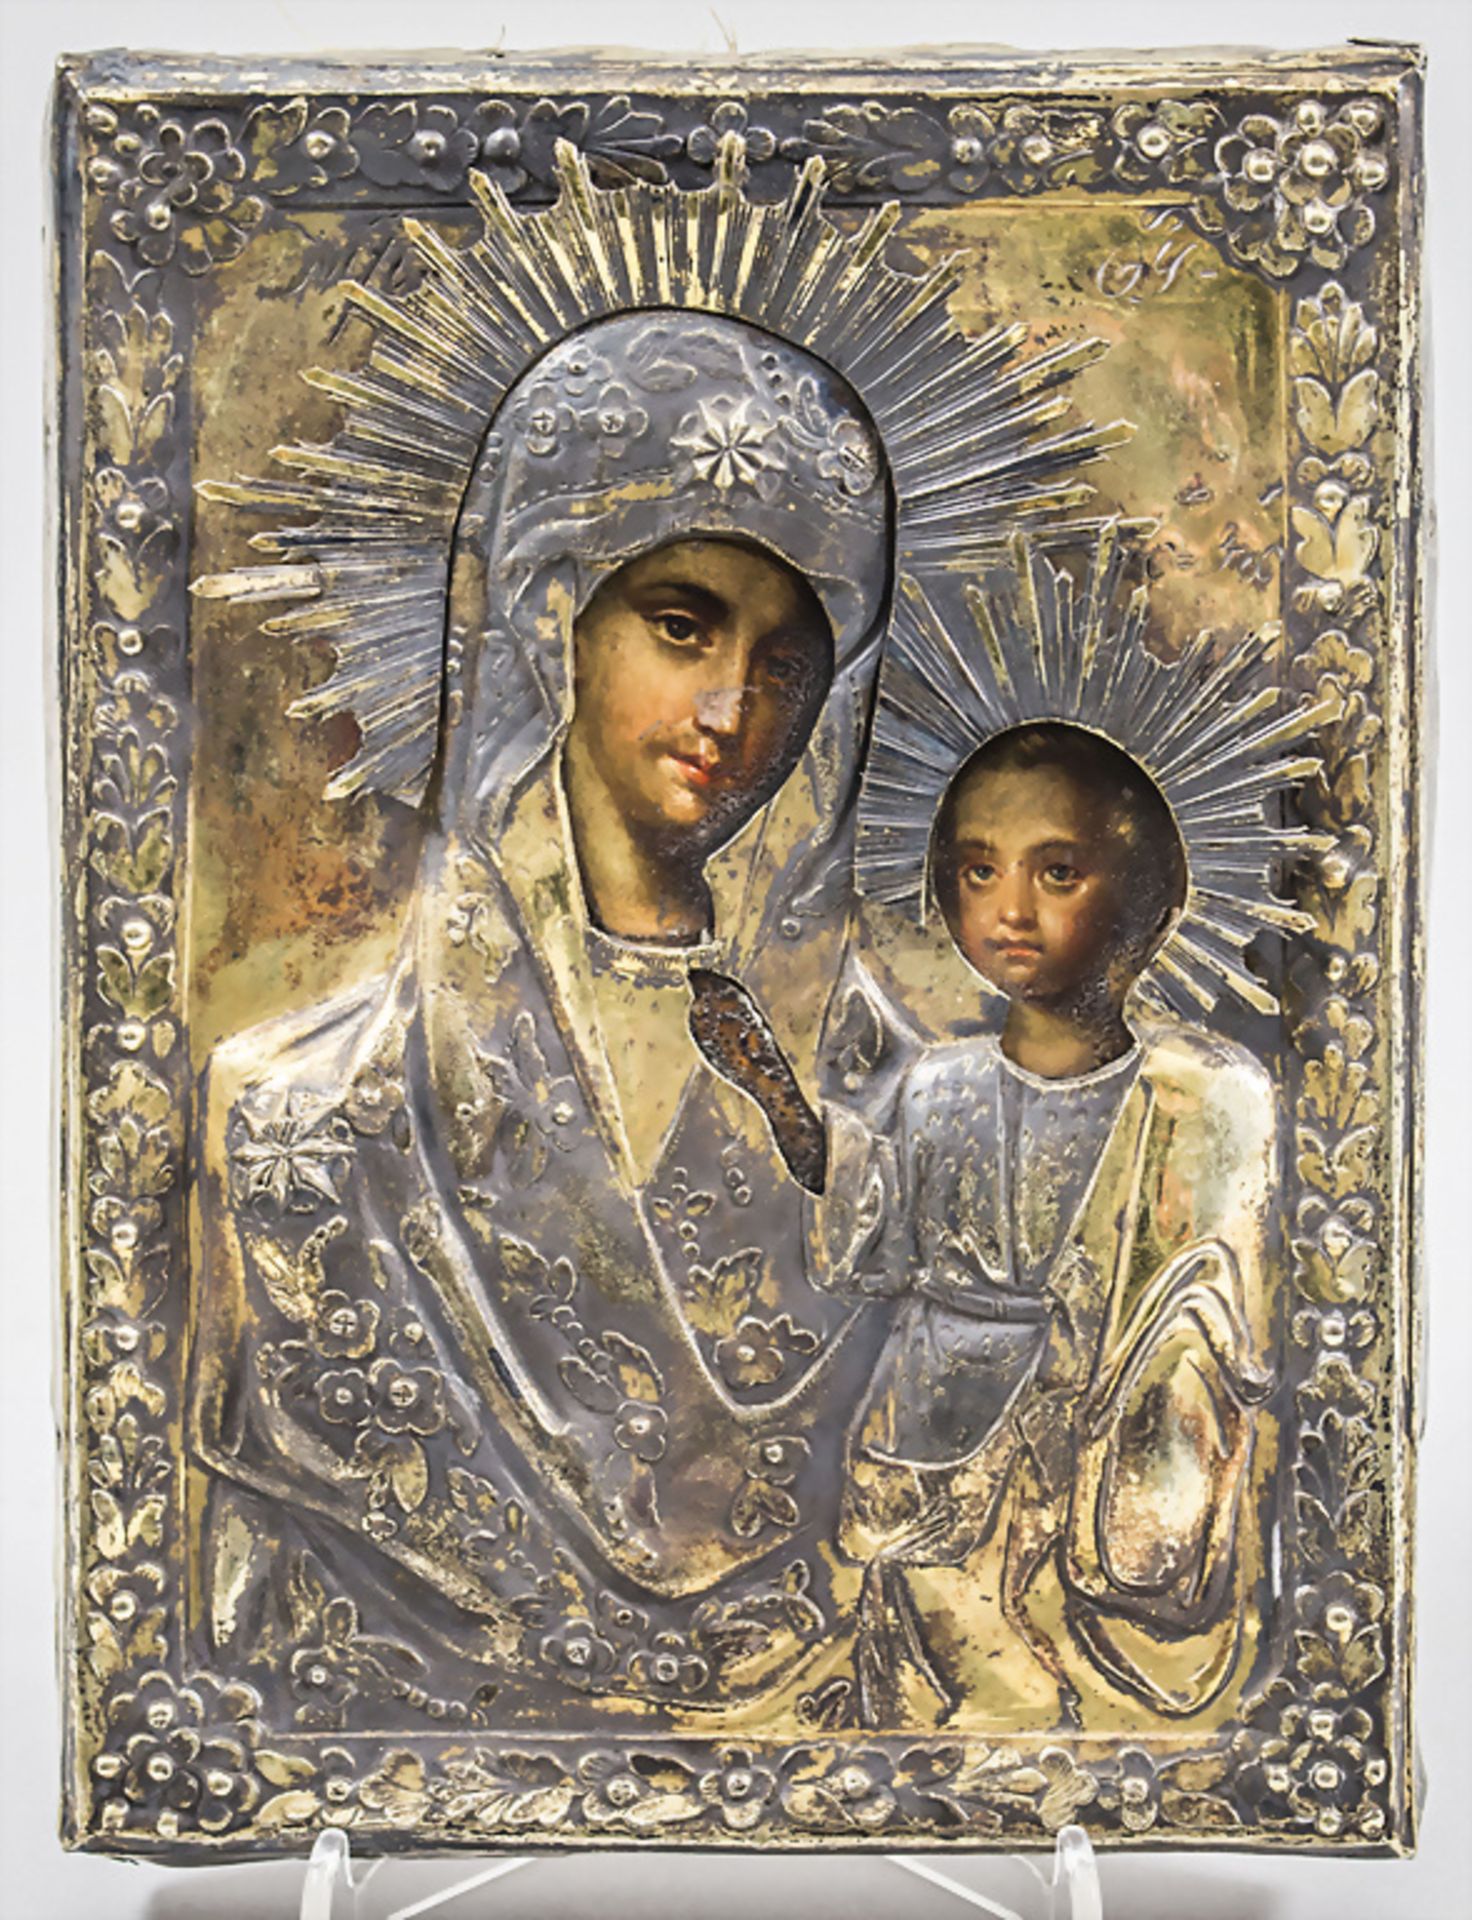 Madonnen Ikone 'Gottesmutter von Kasan' / Icon 'Mother Mary of Kasan', wohl 19. Jh.